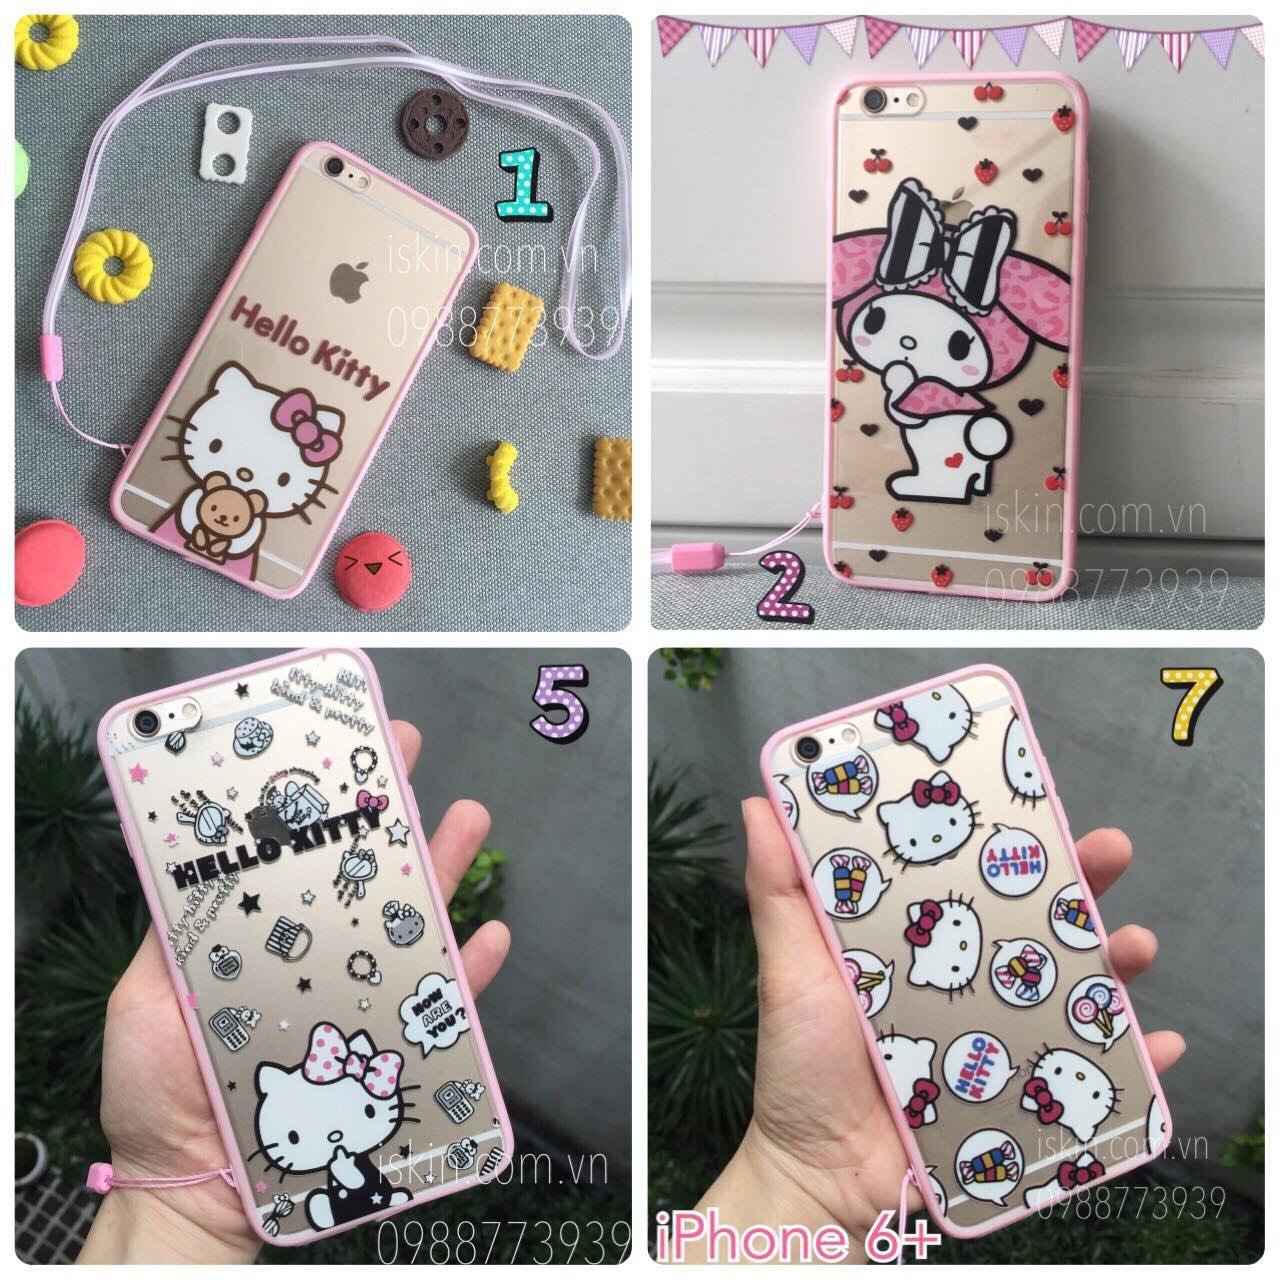 Ốp Lưng Iphone 6 Plus Hello Kitty Dễ Thương Đẹp